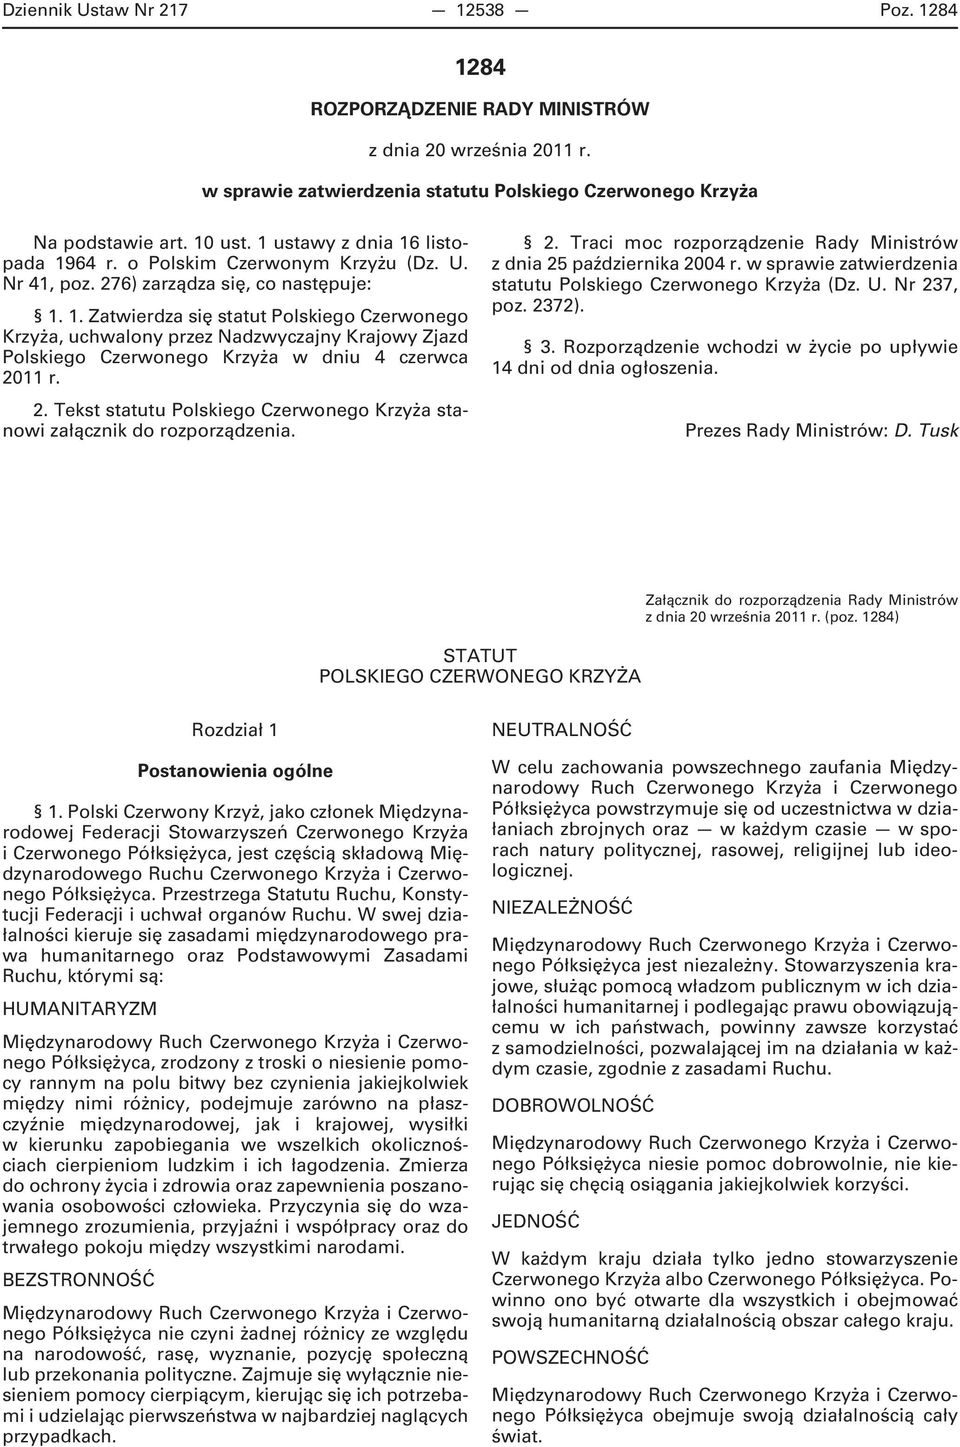 2. Tekst statutu Polskiego Czerwonego Krzyża stanowi załącznik do rozporządzenia. 2. Traci moc rozporządzenie Rady Ministrów z dnia 25 października 2004 r.